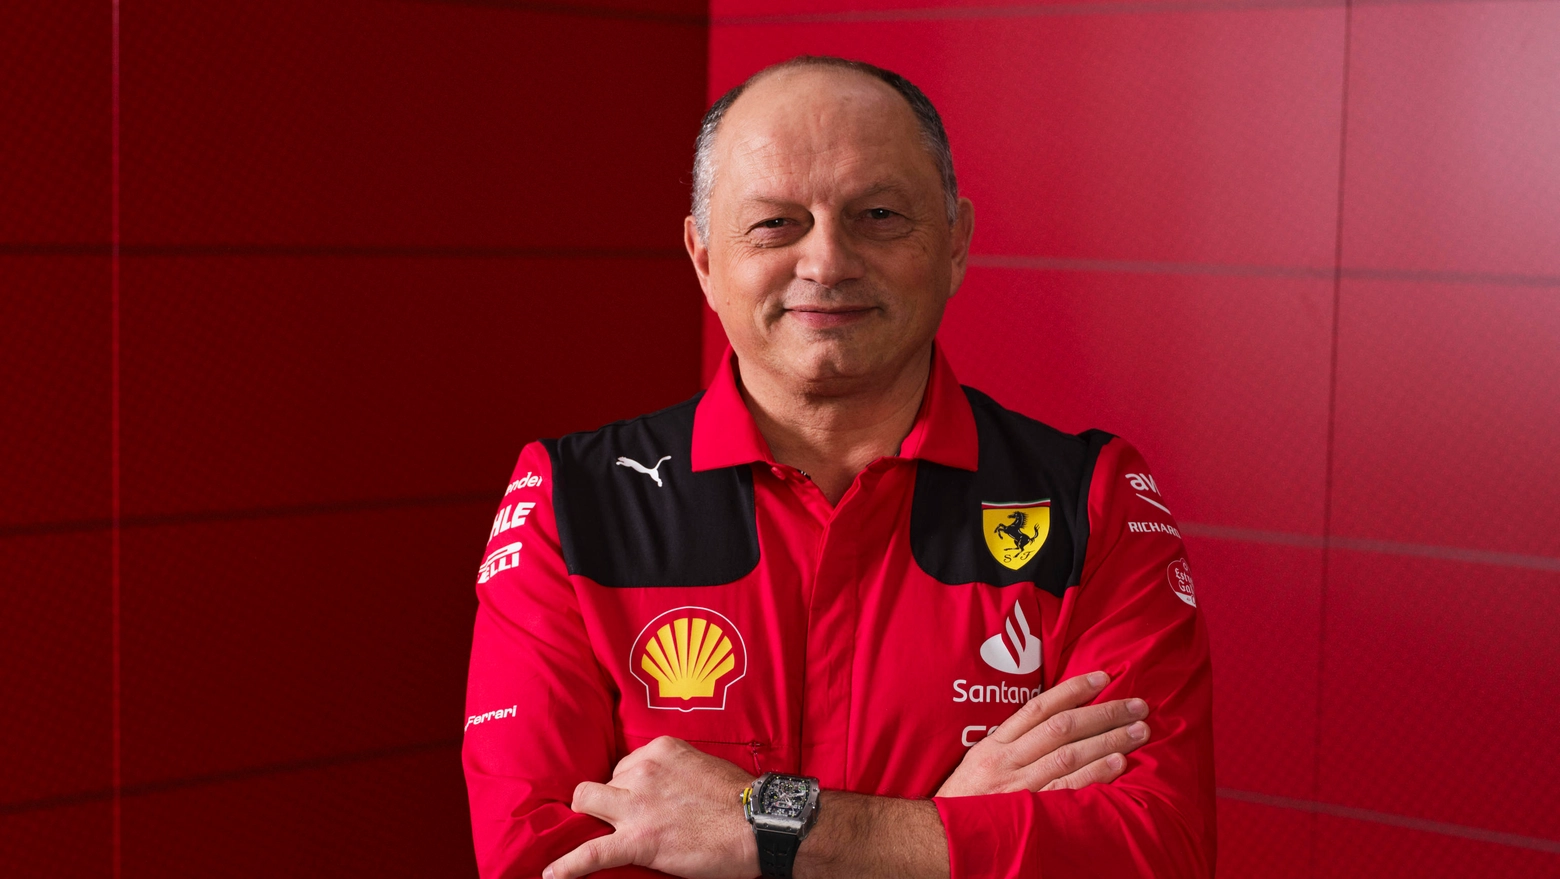 La Ferrari non va, ma Vasseur ride e resta ottimista